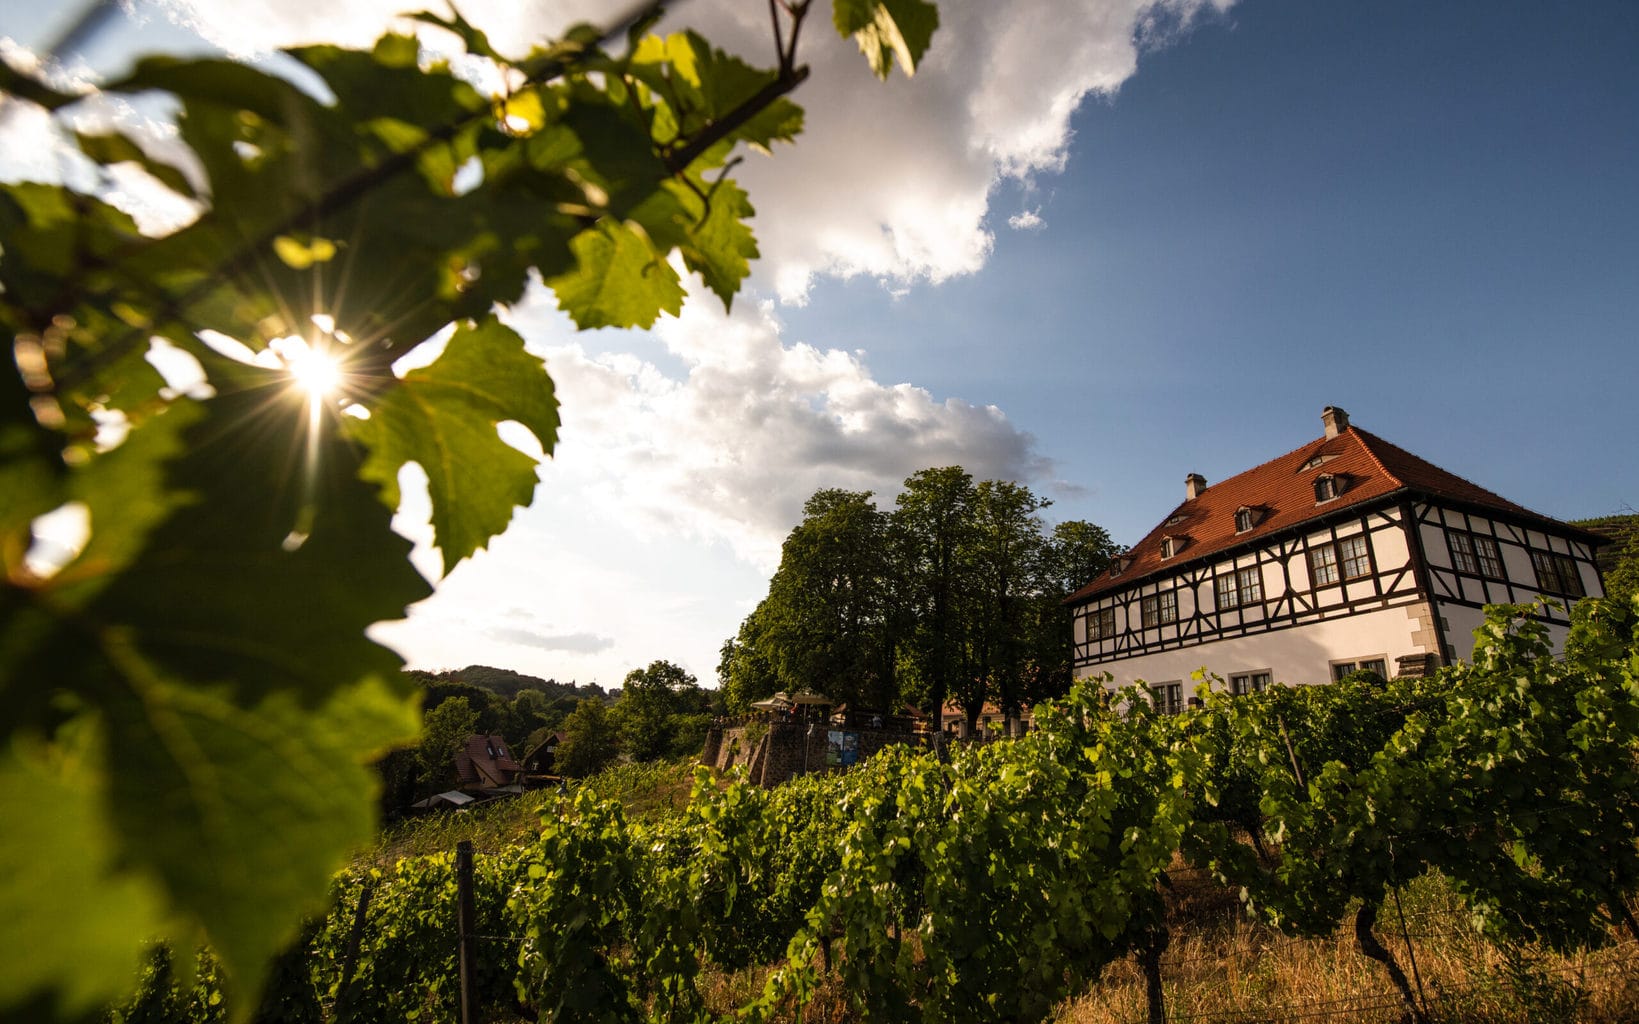 Wijngaard van wijnboer Hofloessnitz in Saksen